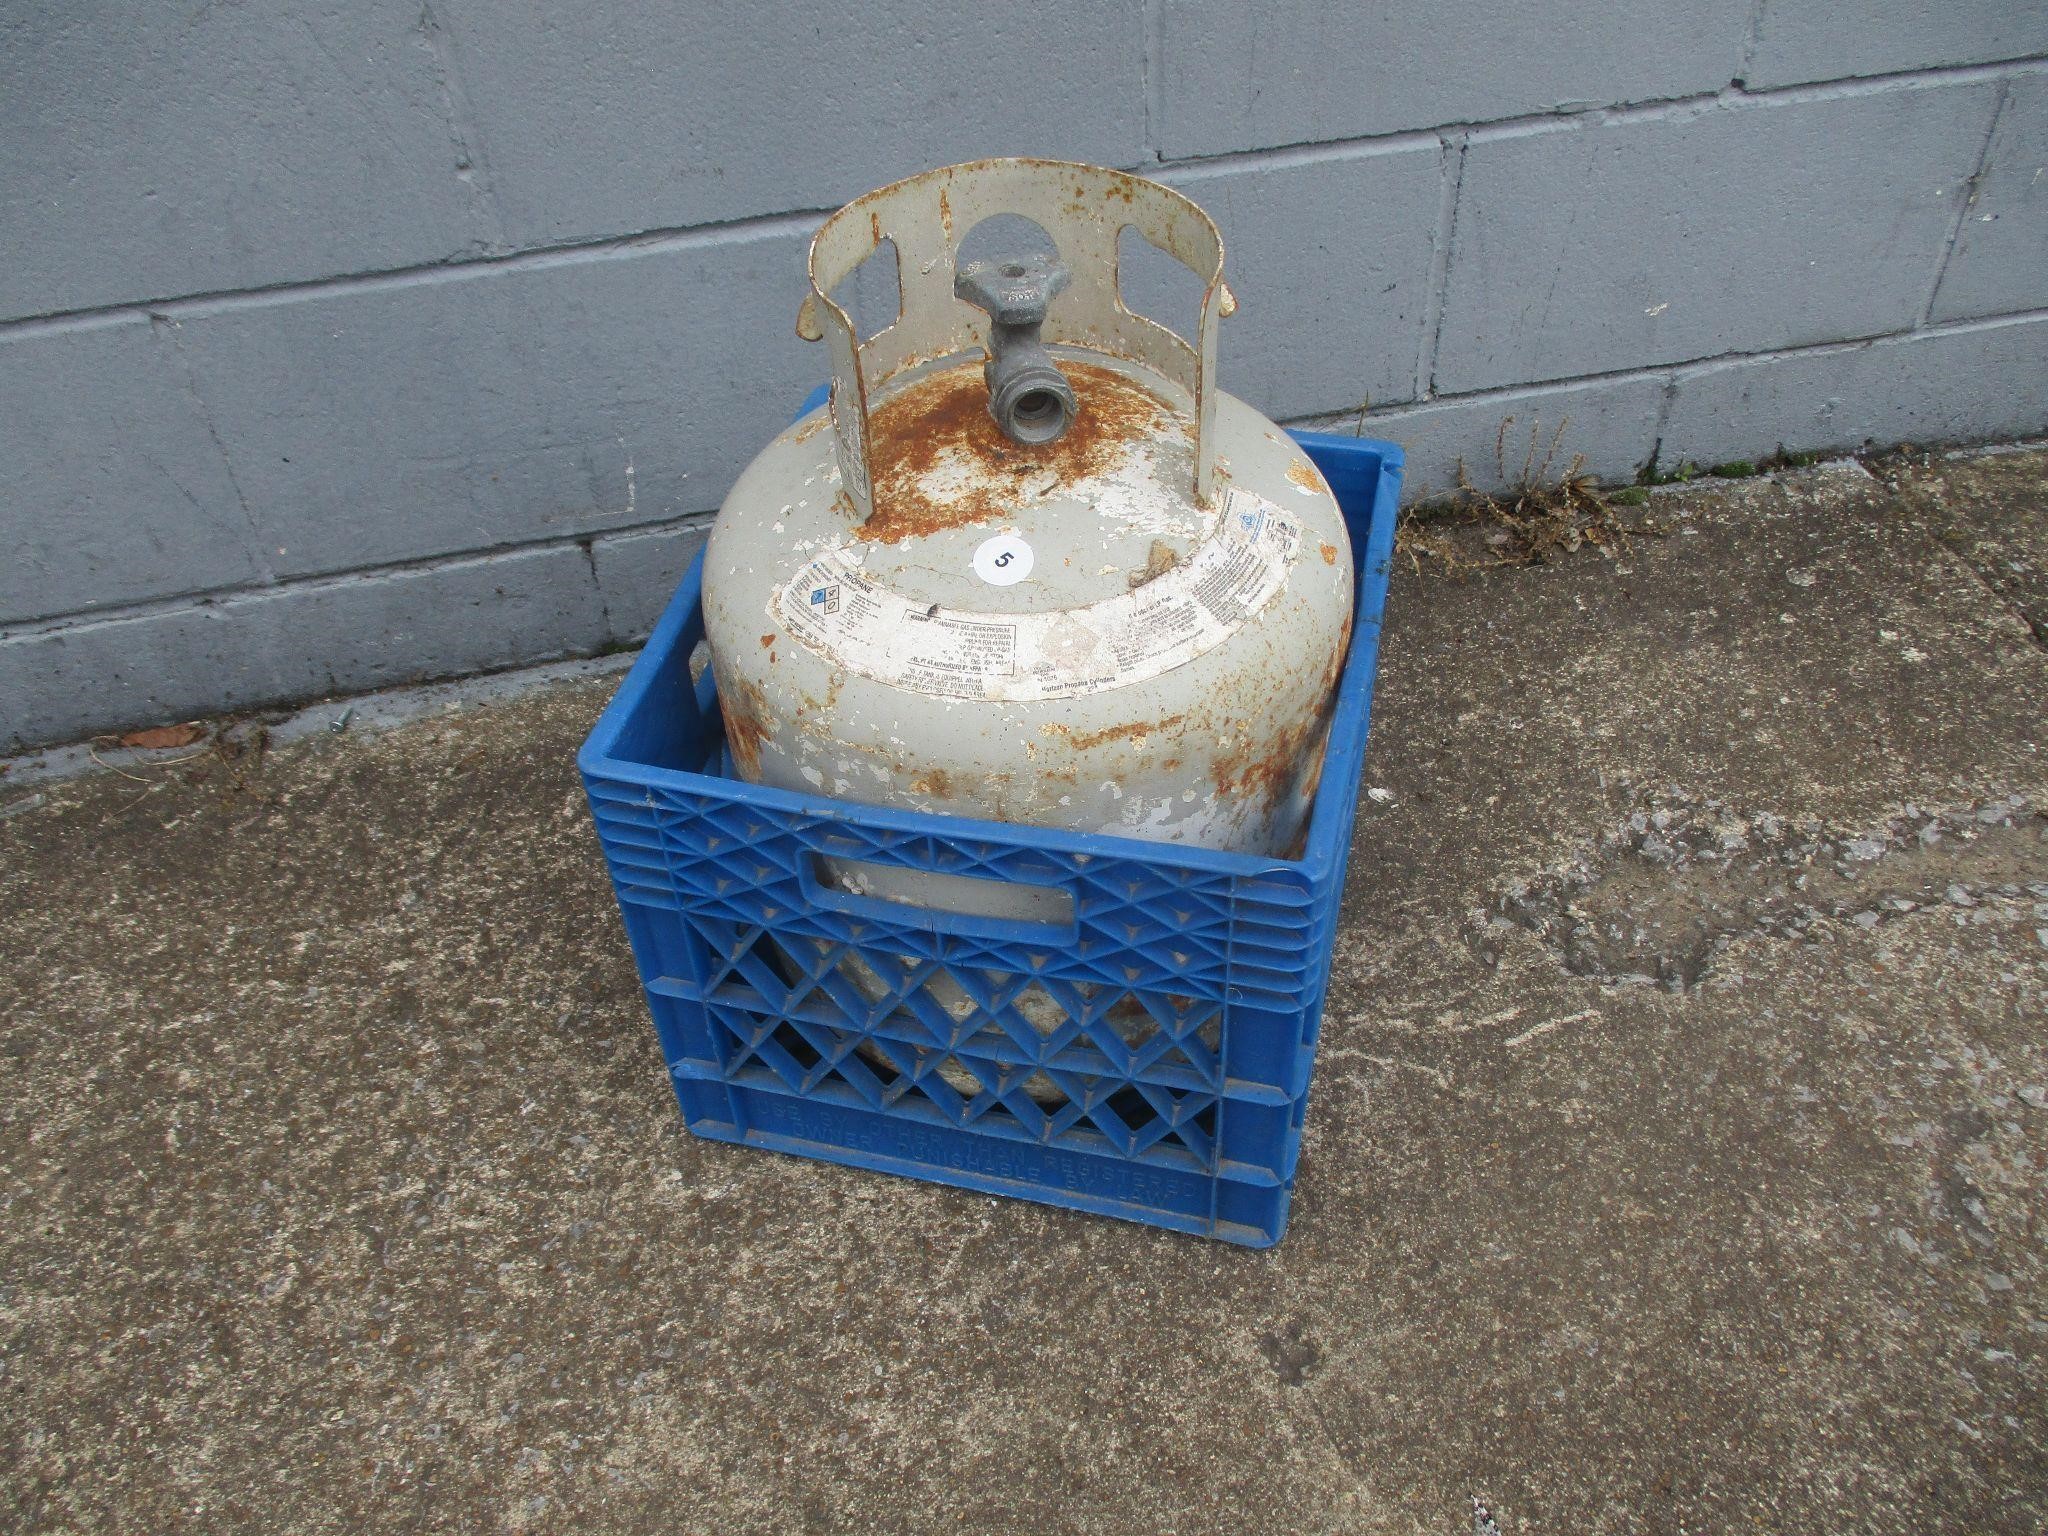 Propane Gas Tank in Blue Crate